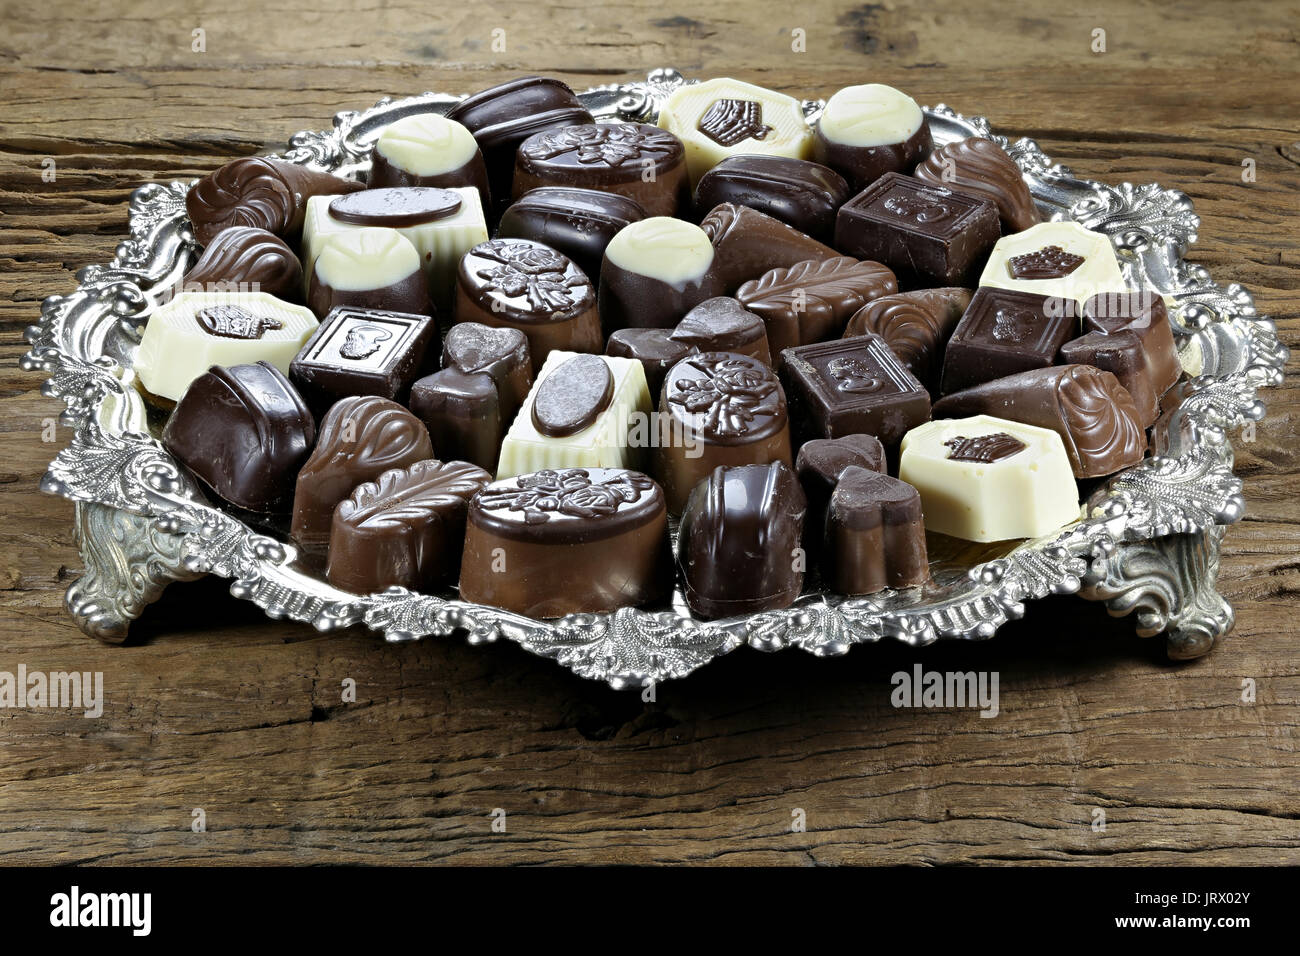 Plateau d'argent avec des pralines au chocolat belge sur fond de bois rustique Banque D'Images